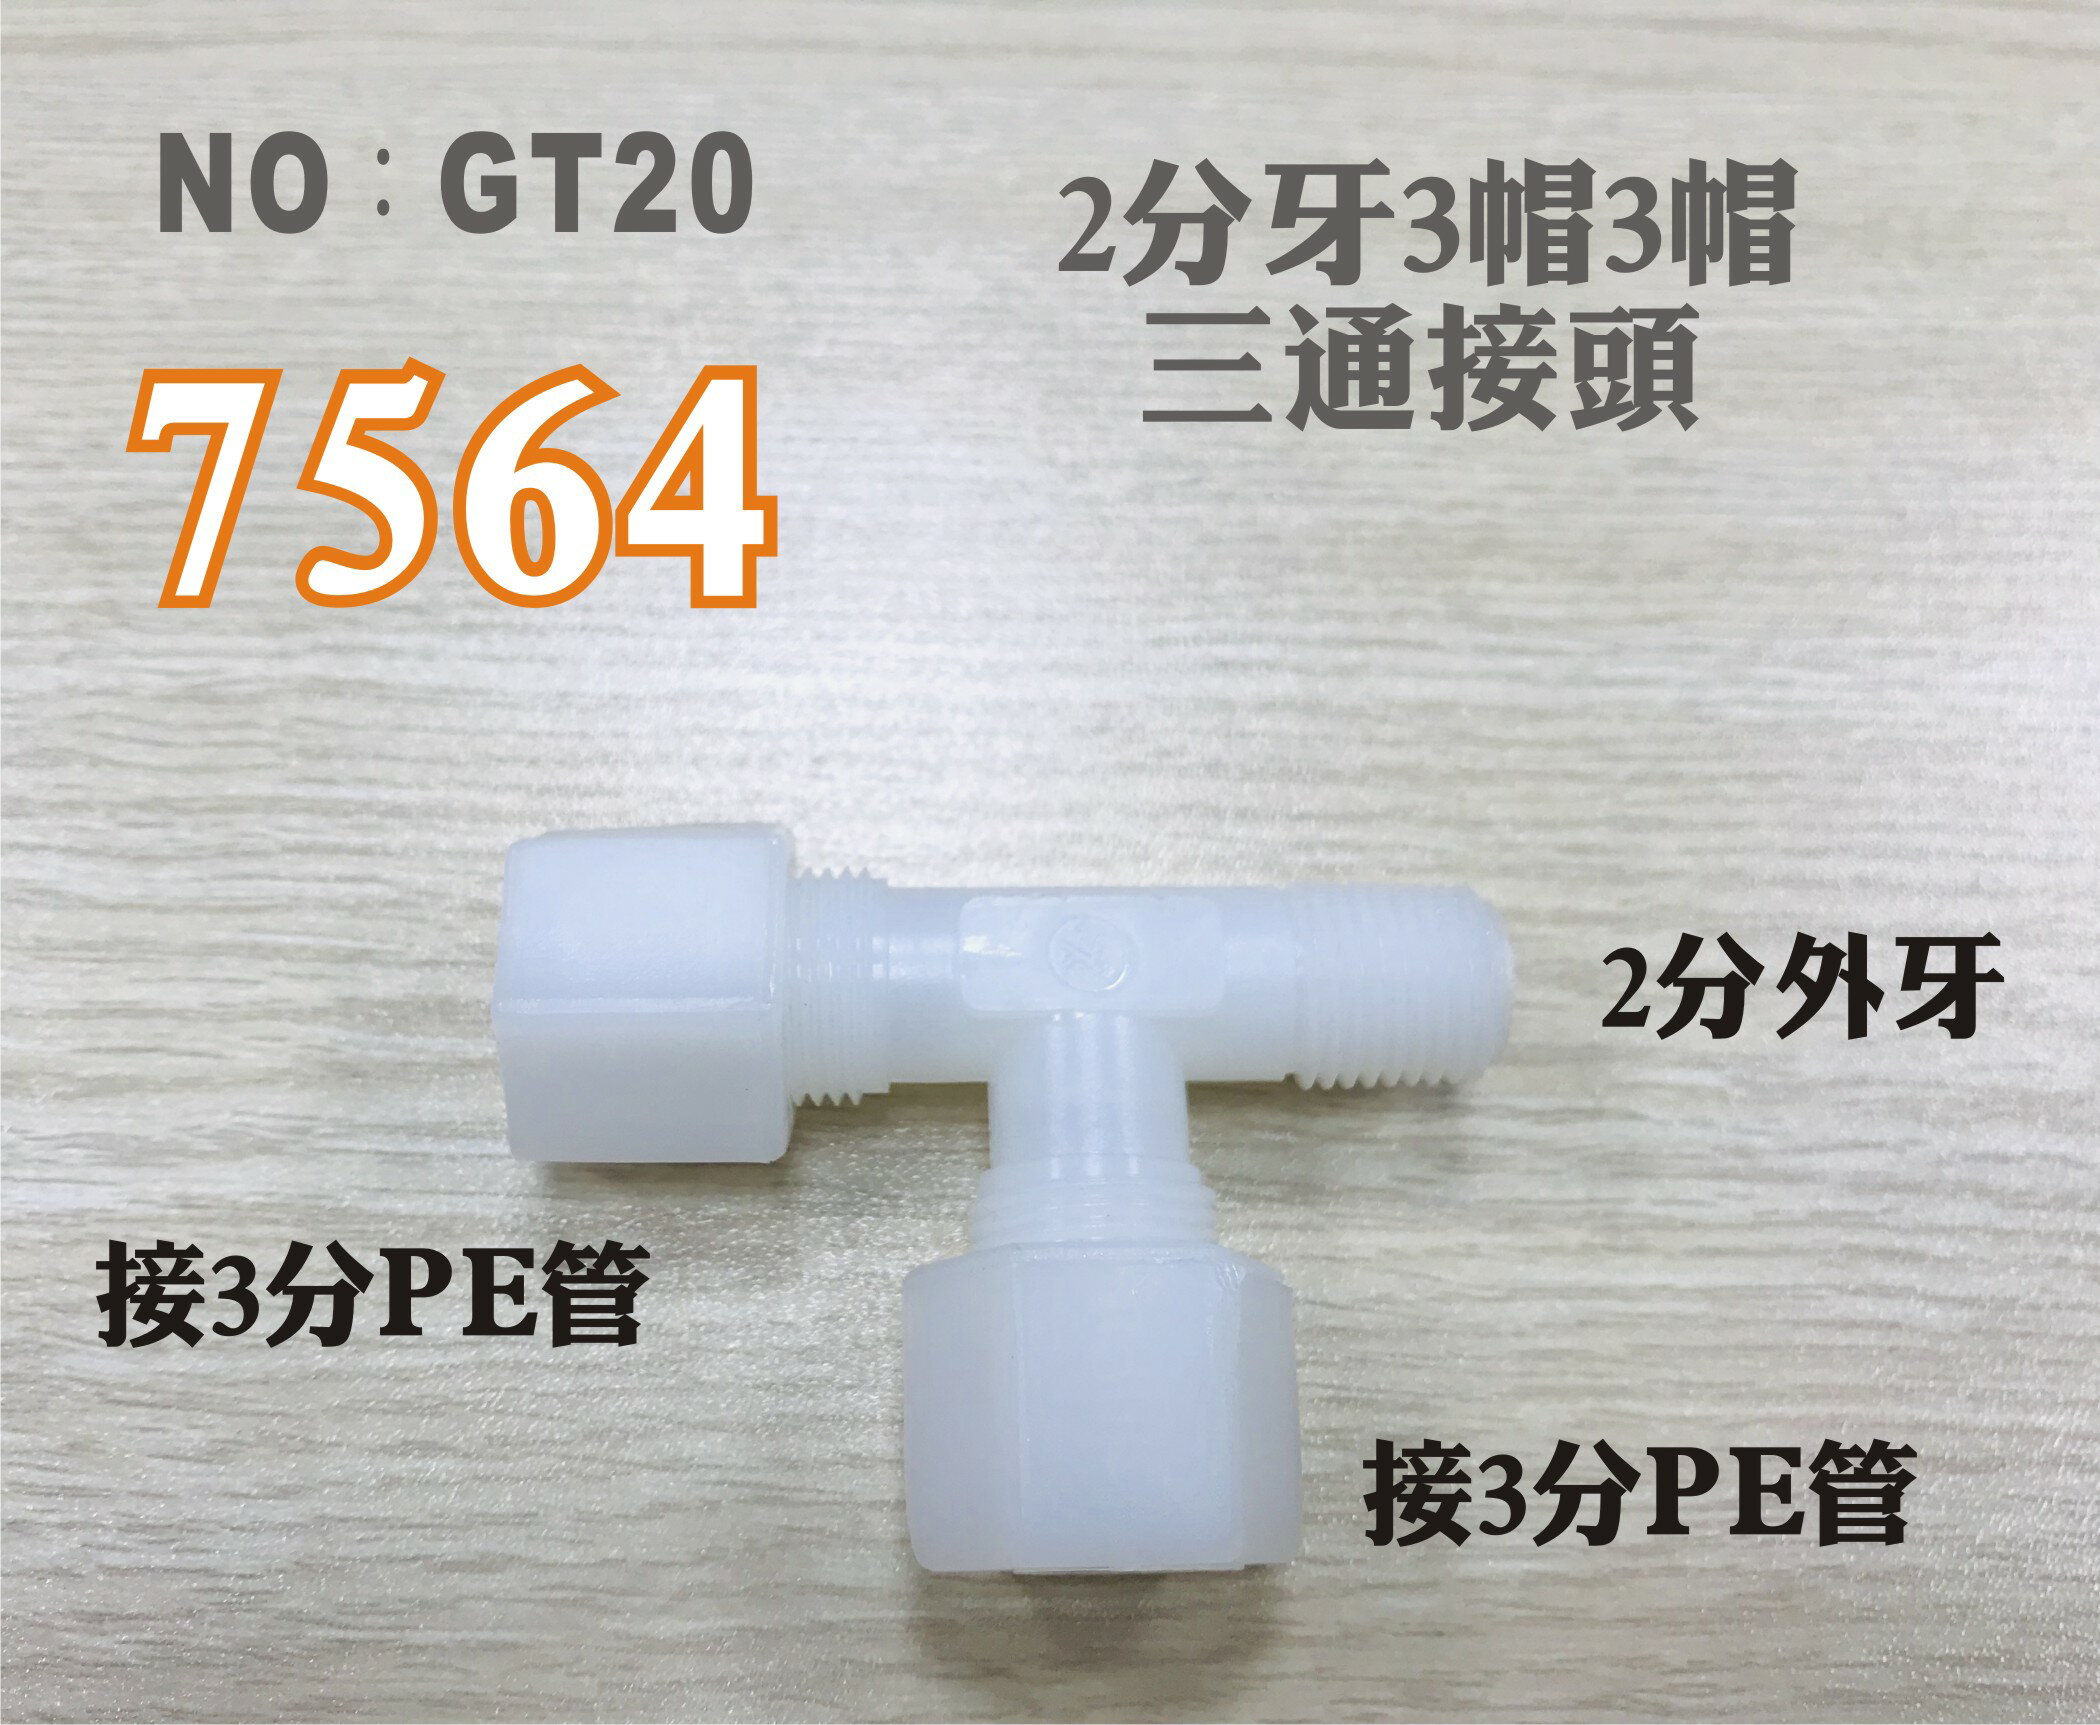 【龍門淨水】塑膠接頭 7564 2分牙接3分管 三通接頭 台灣製造 2牙3帽T型接頭 直購價只要25元(GT20)